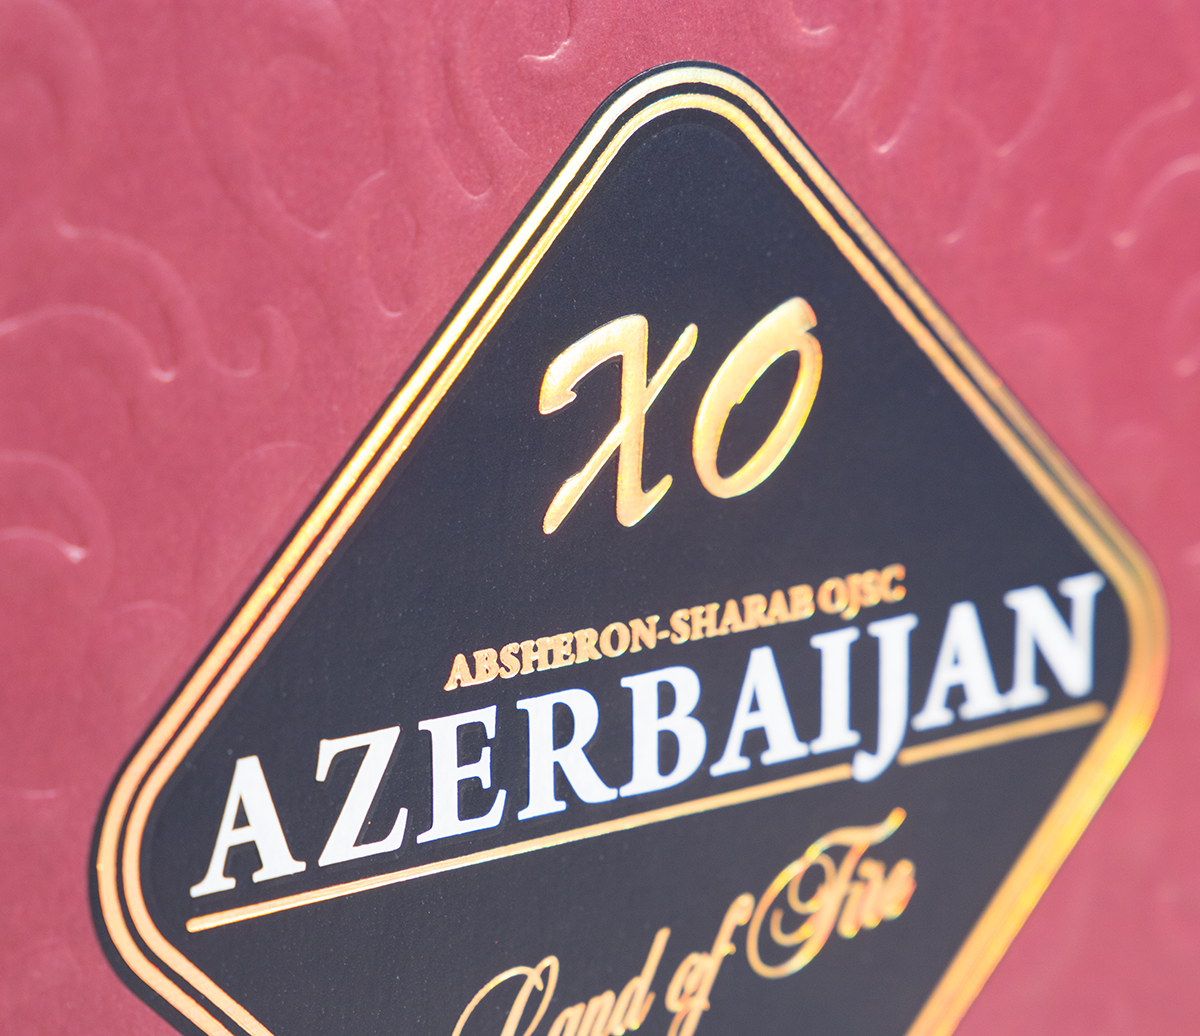 Подарочная коробка на магните под бутылку "Azerbaijan", 215*250*60 мм